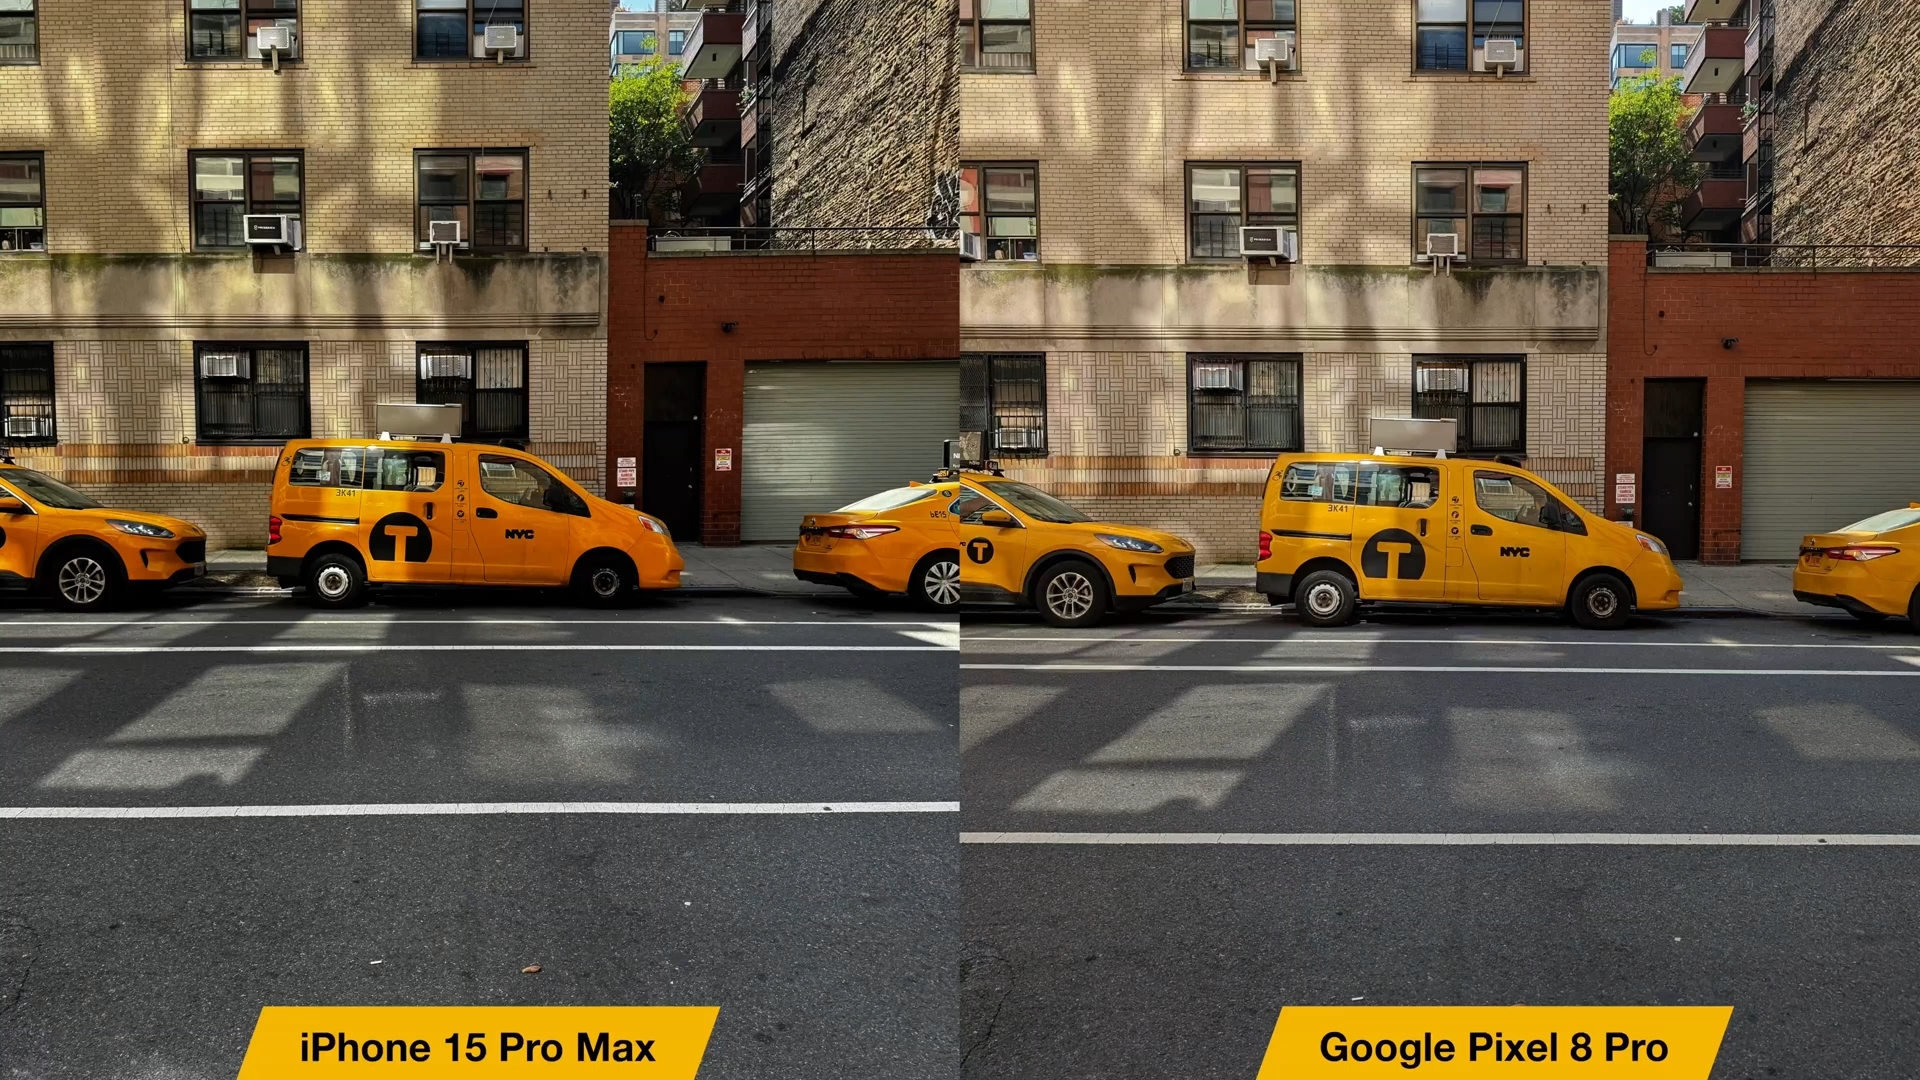 iPhoneIslam.com'dan Google Pixel 8 Pro ile iPhone 15 Pro Max arasındaki karşılaştırma